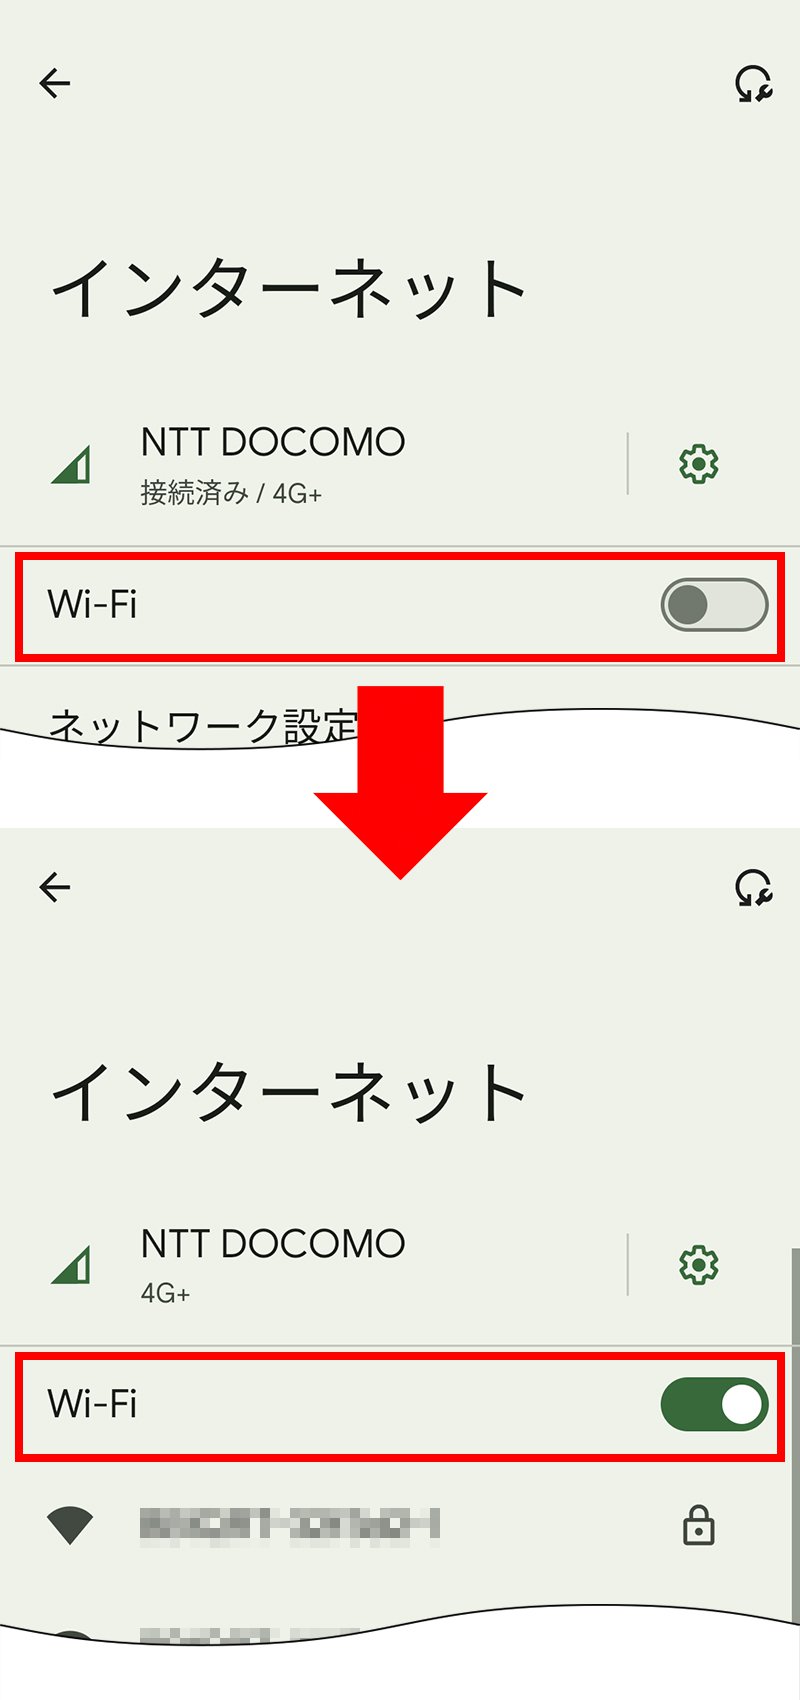 説明図：「Wi-Fi」の位置